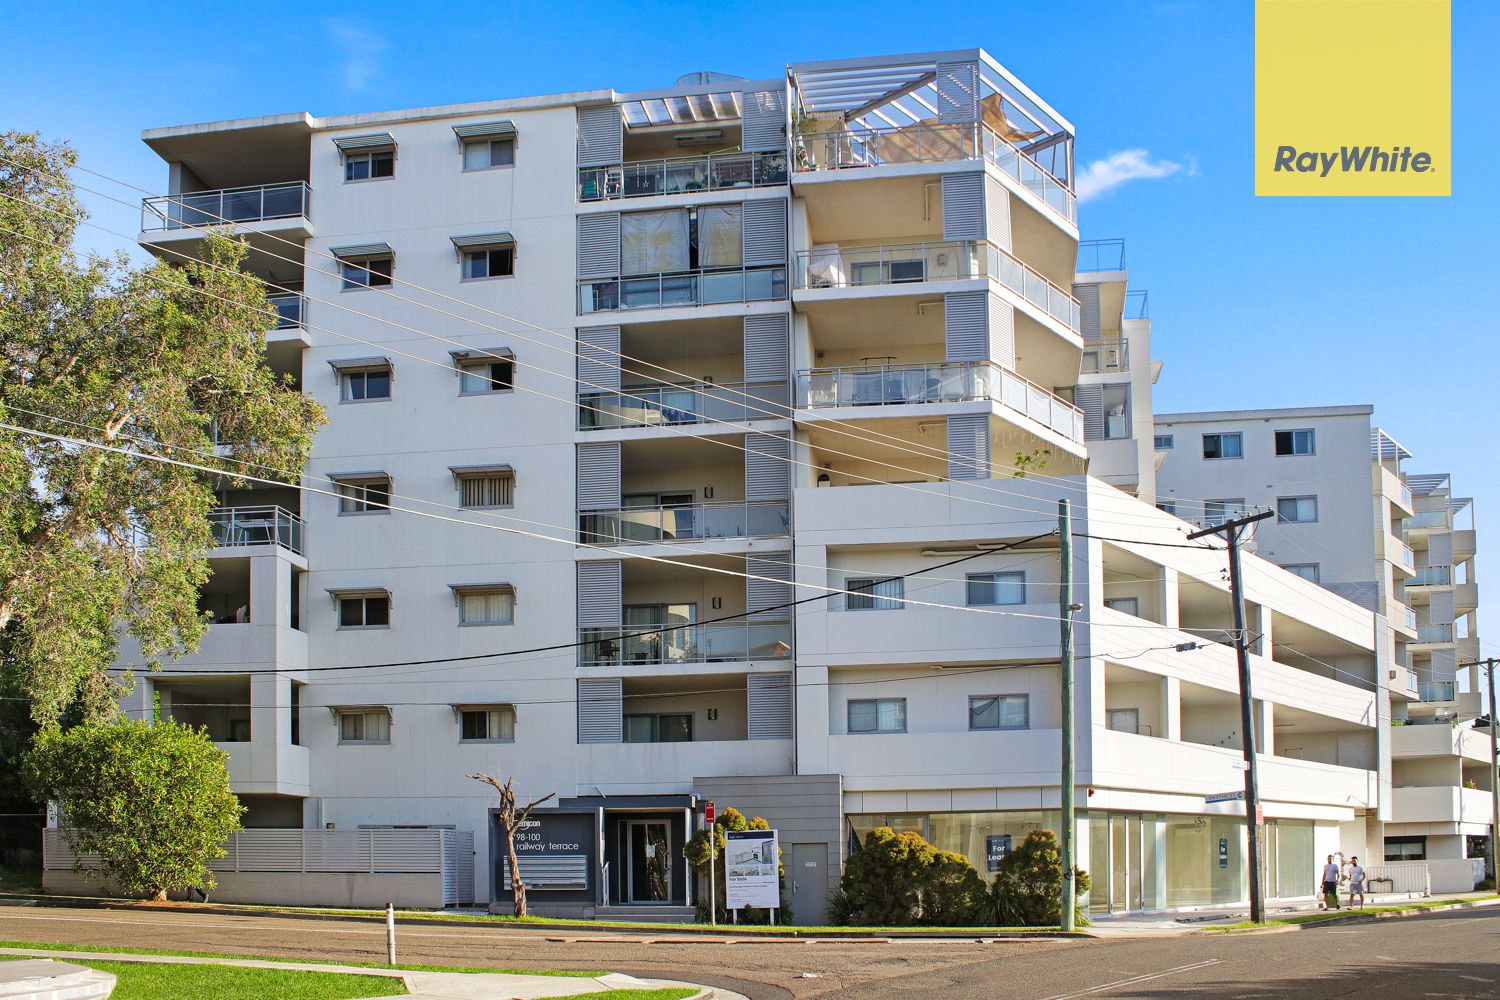 3 bedrooms Apartment / Unit / Flat in 104/98-100 Railway Terrace MERRYLANDS NSW, 2160